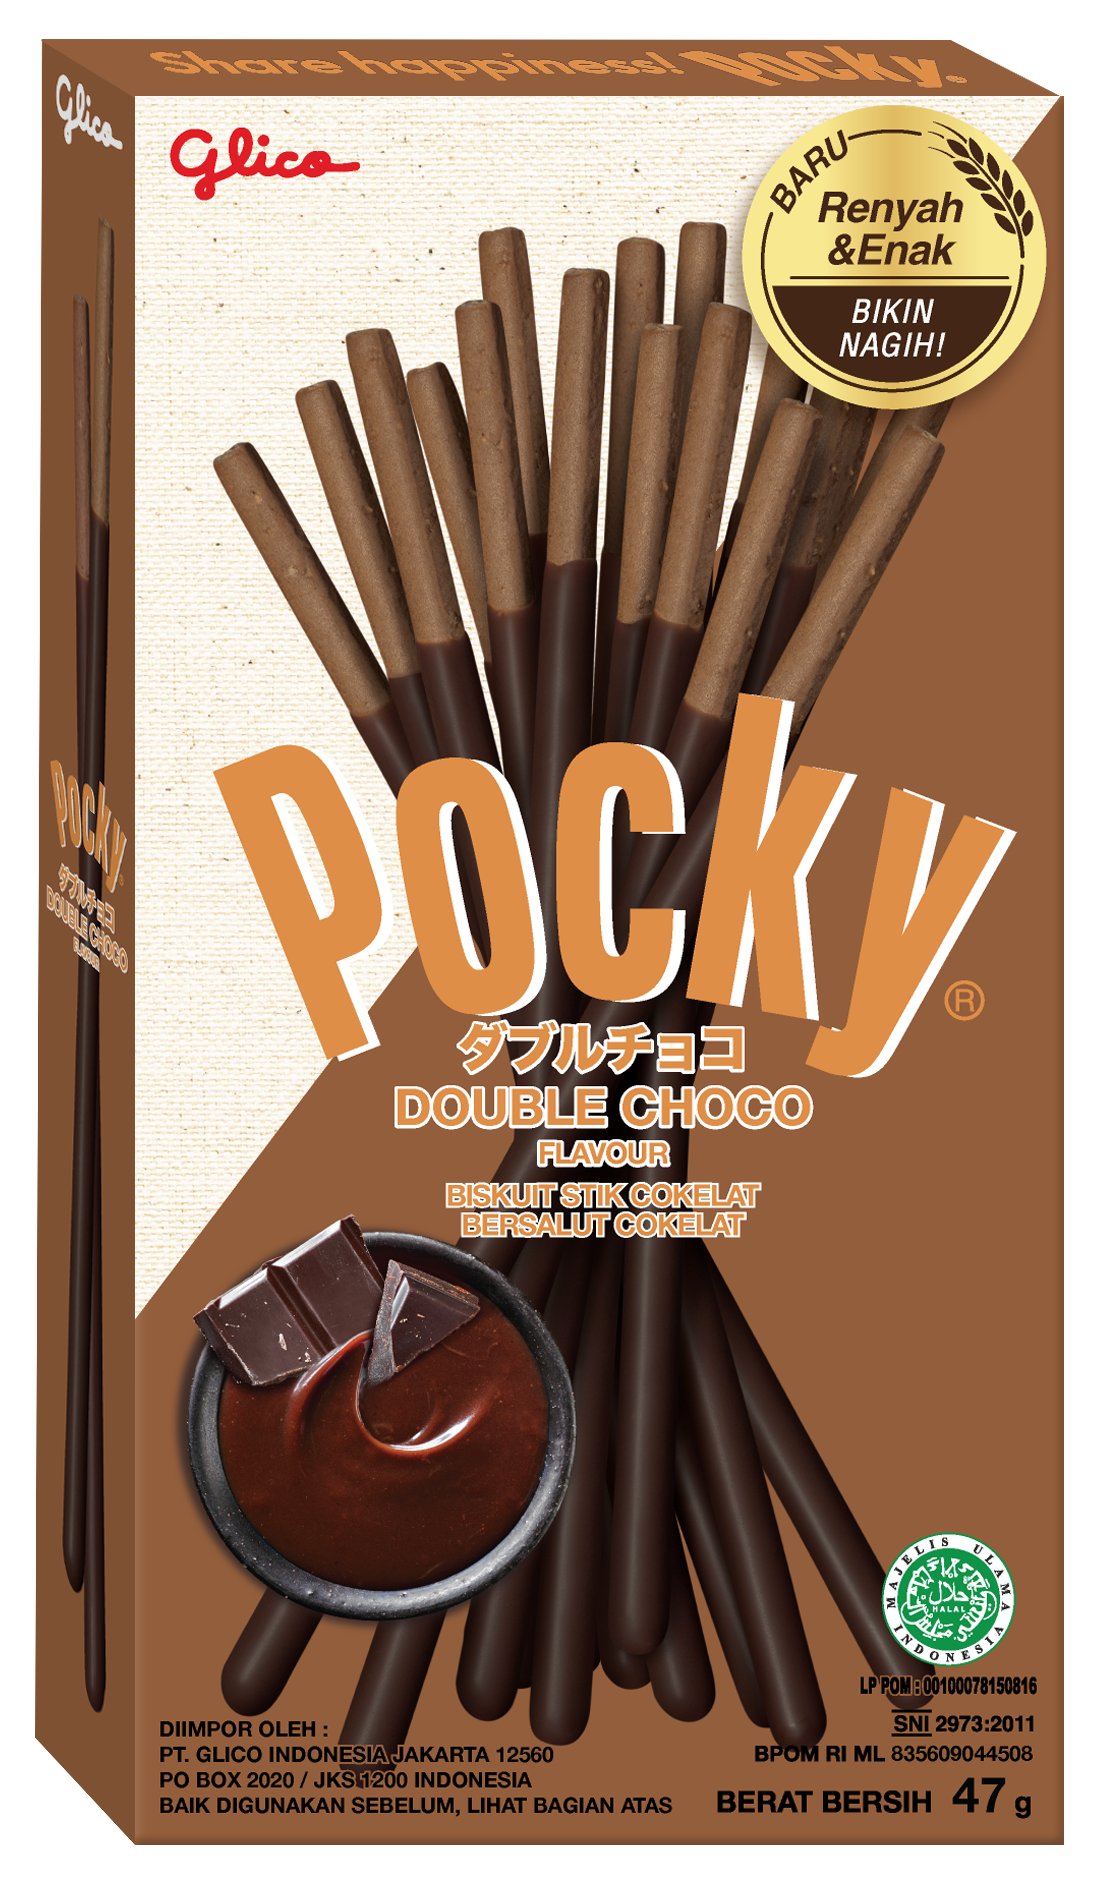 Pocky Sticks